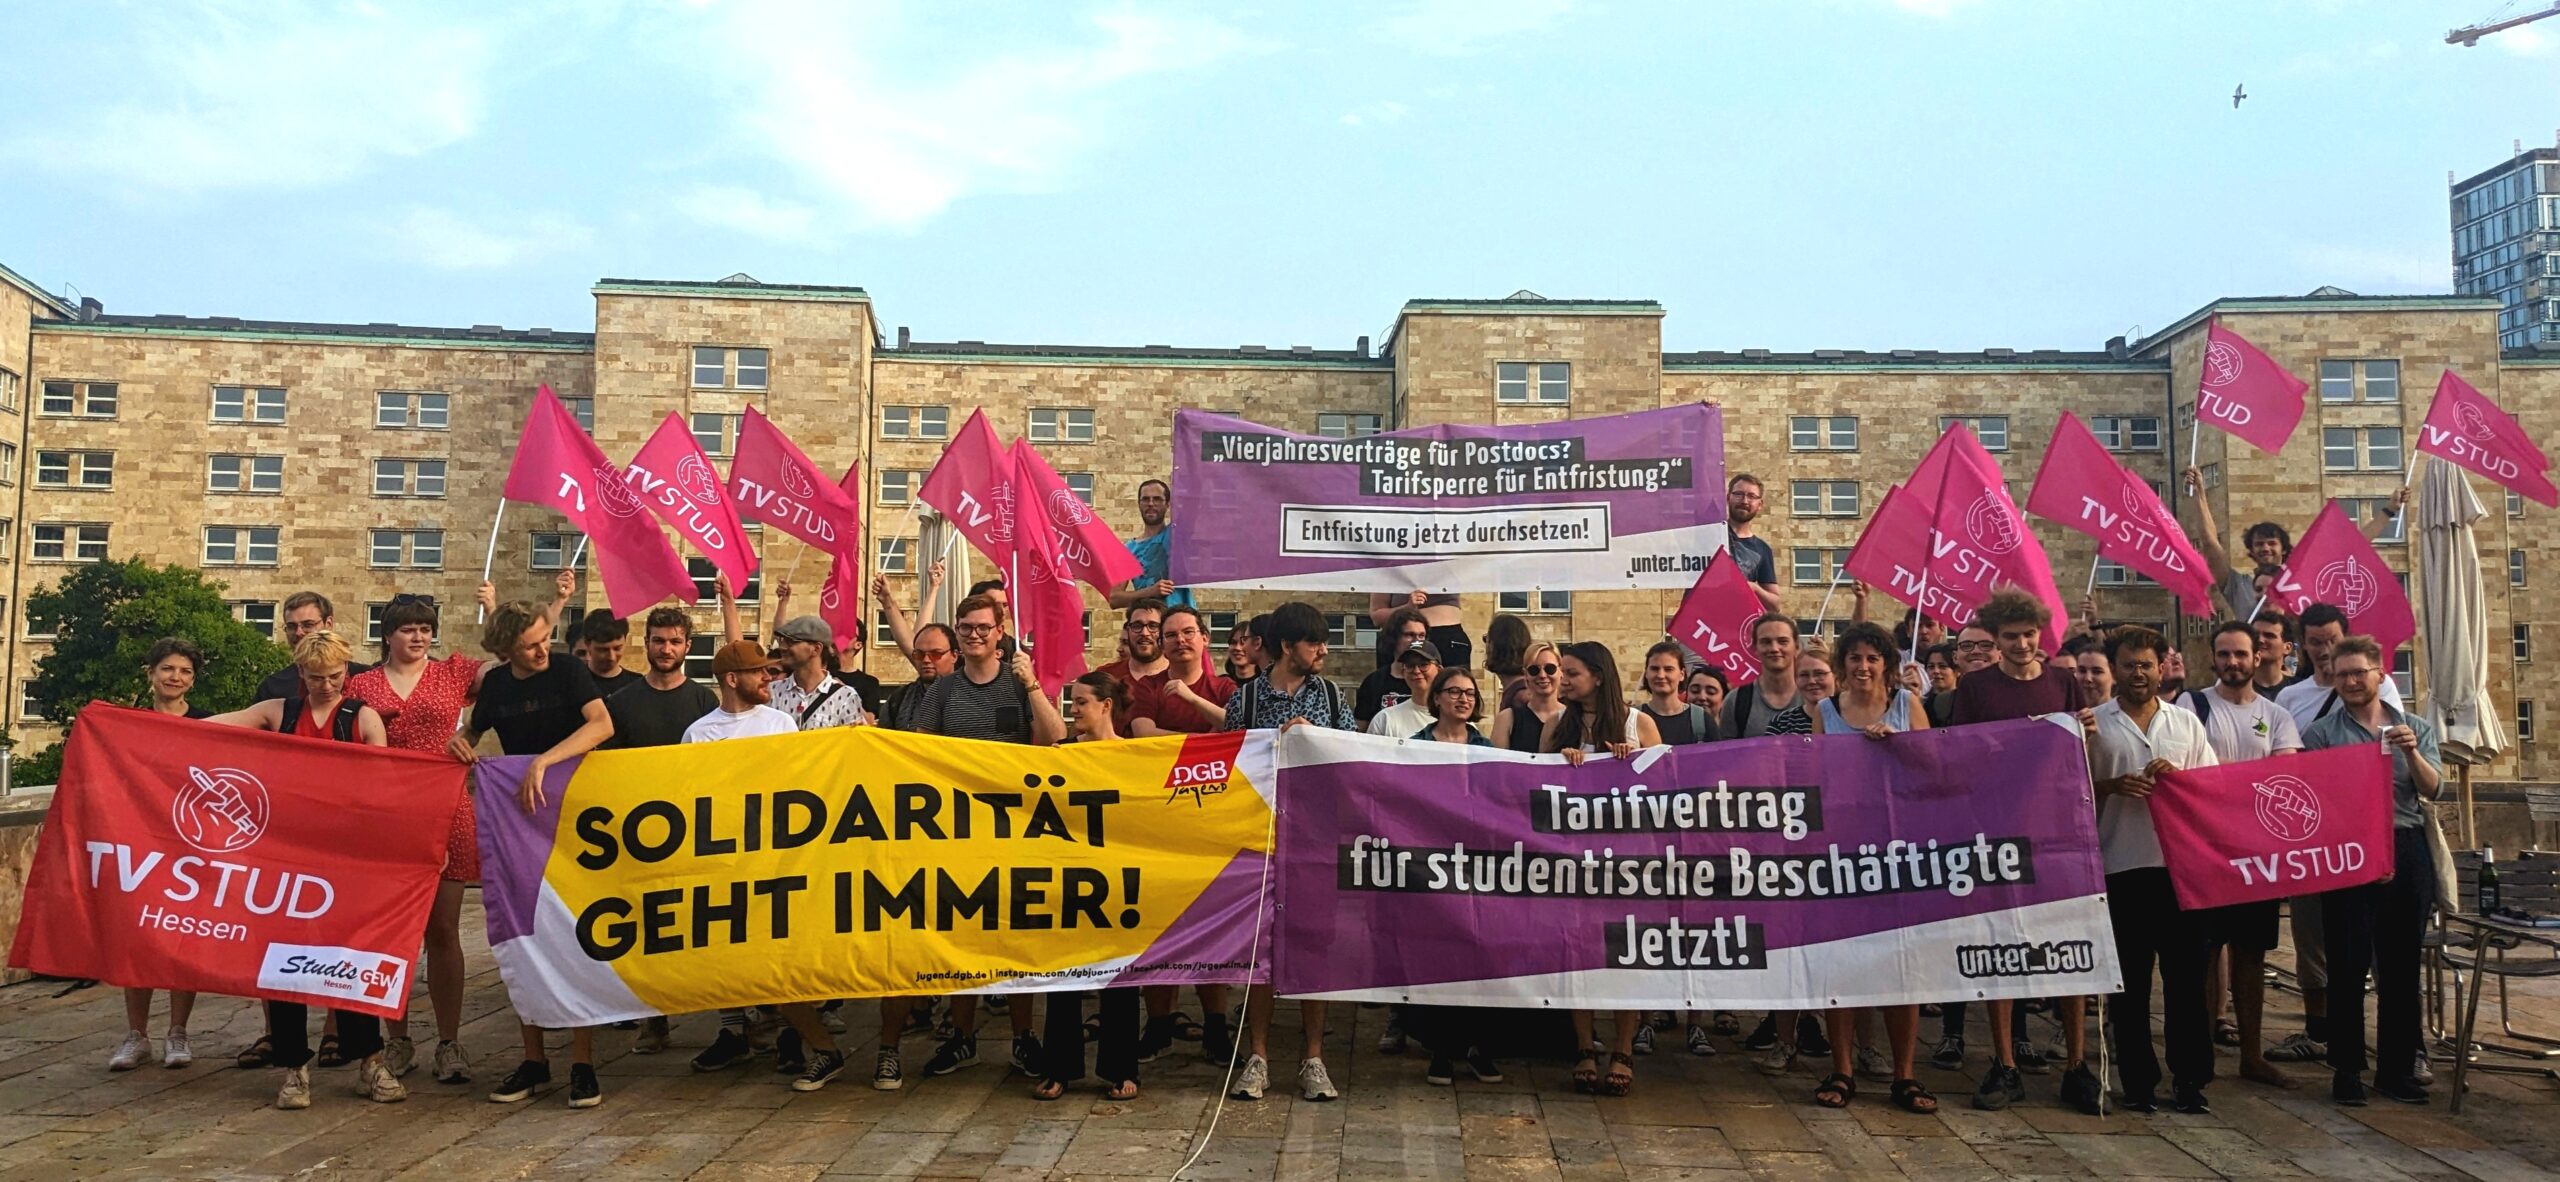 Tarifvertrag Jetzt! Vollversammlung der Studentischen Beschäftigten der Goethe-Uni